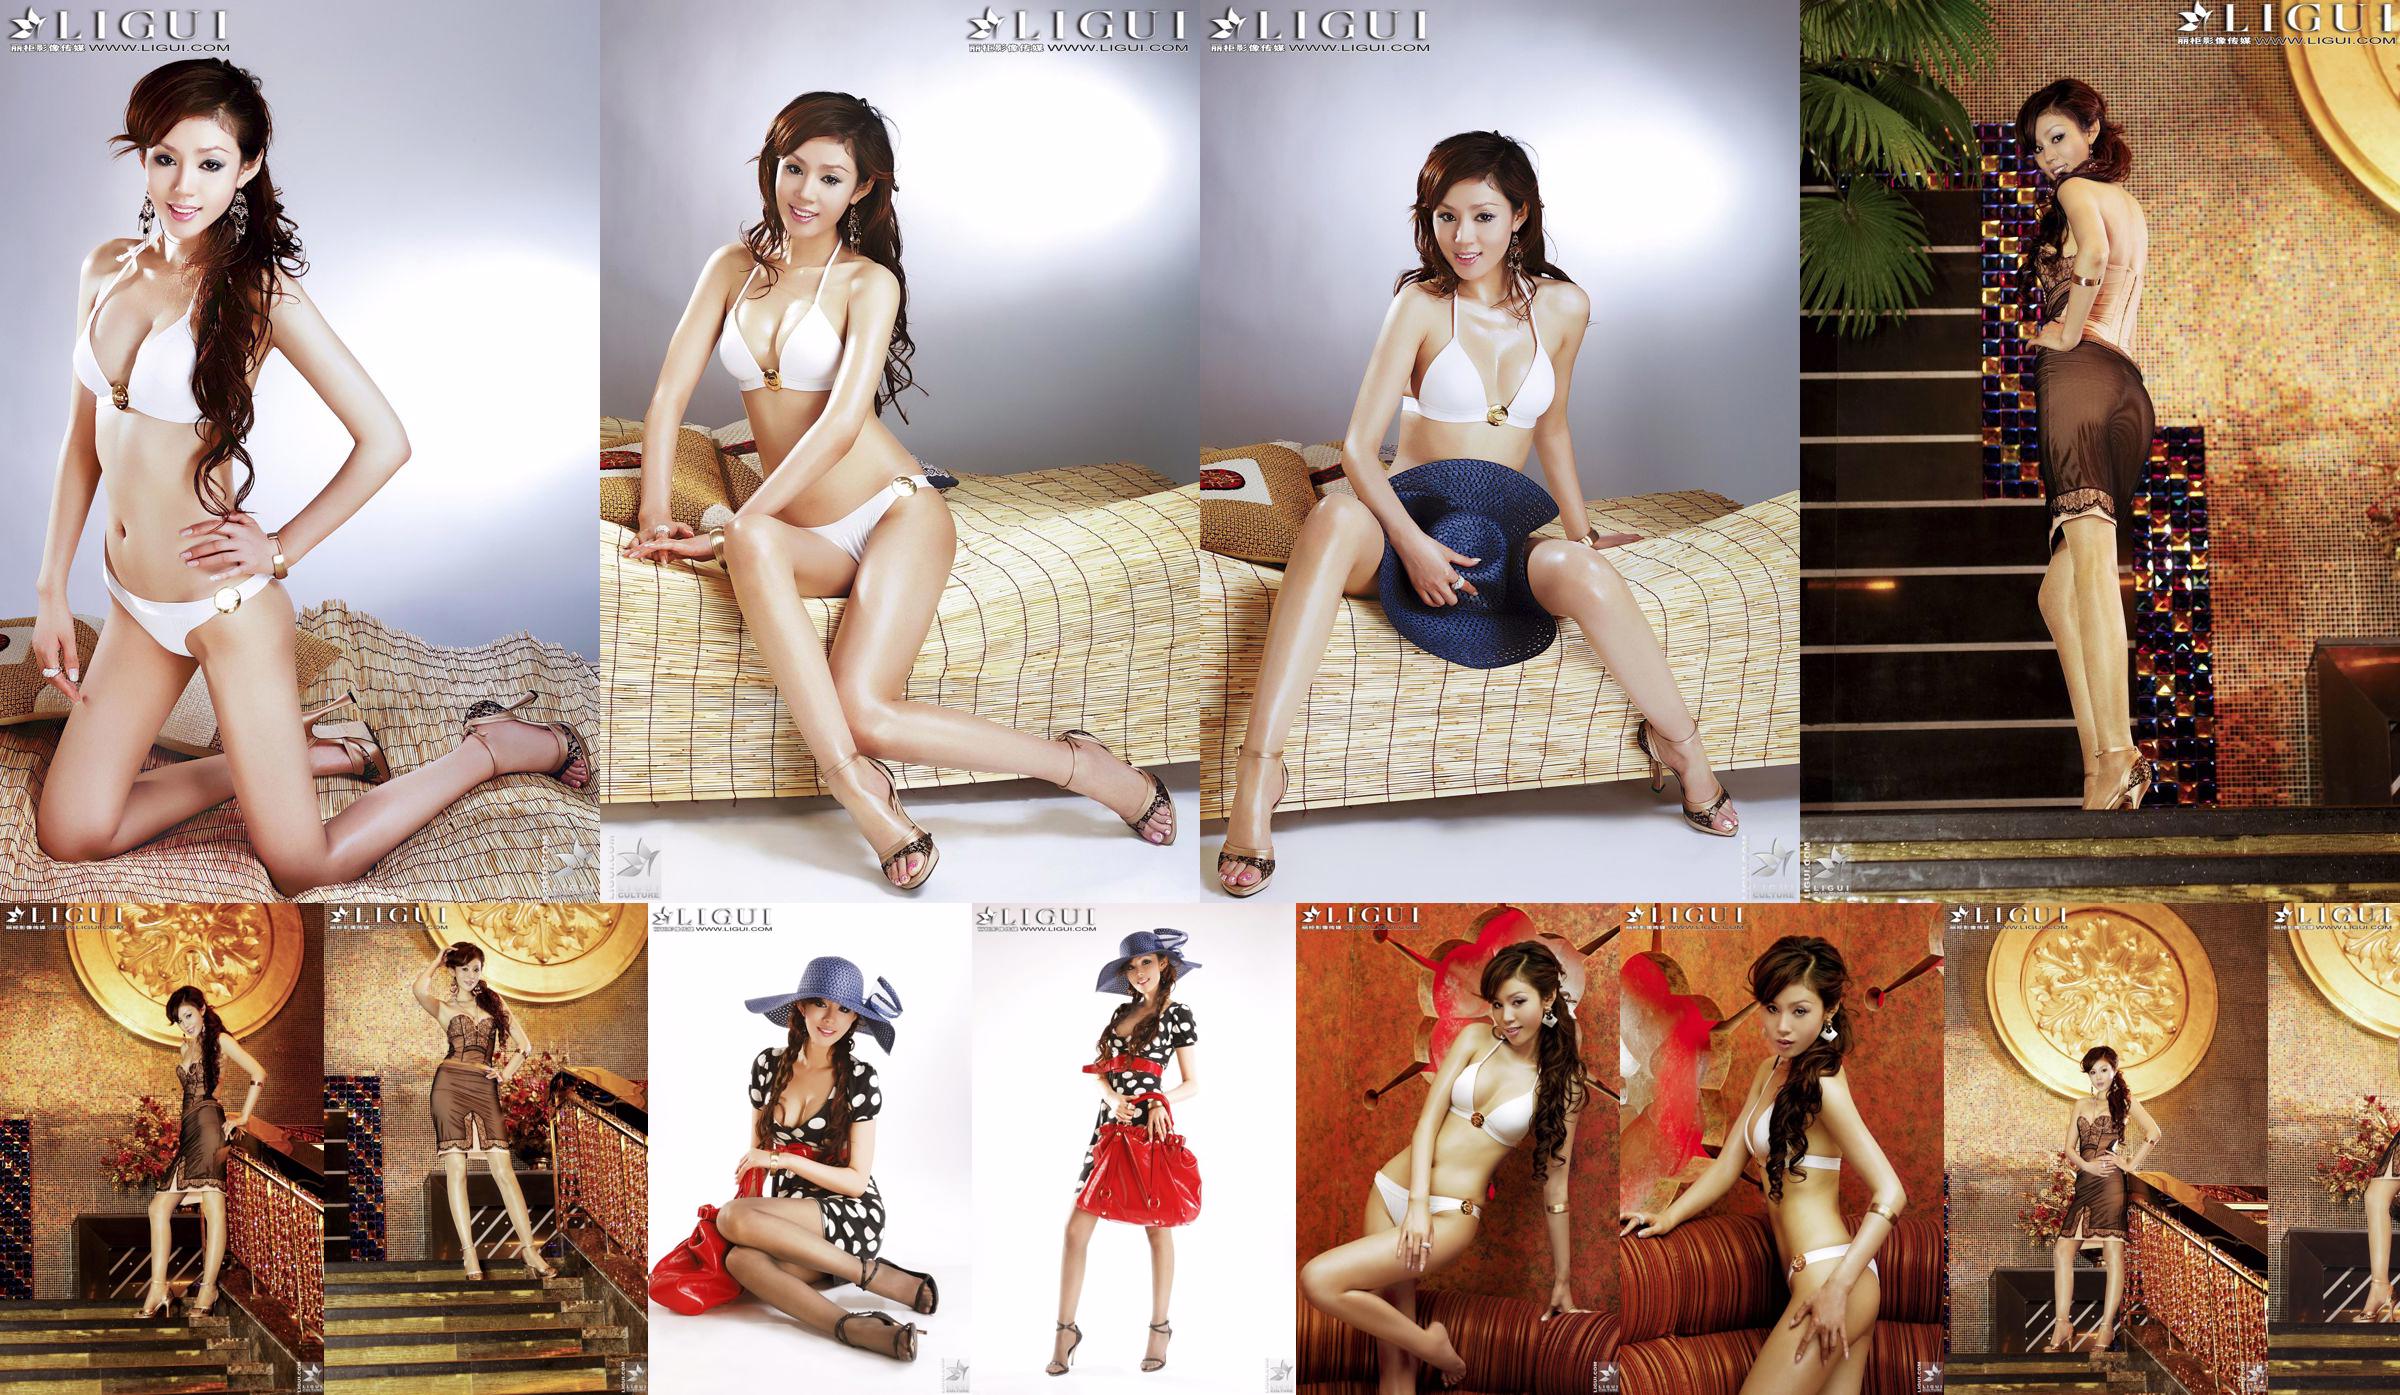 [丽 柜 LiGui] Model Yao Jinjins "Bikini + Kleid" Schöne Beine und seidige Füße Foto Bild No.3ce0c7 Seite 6